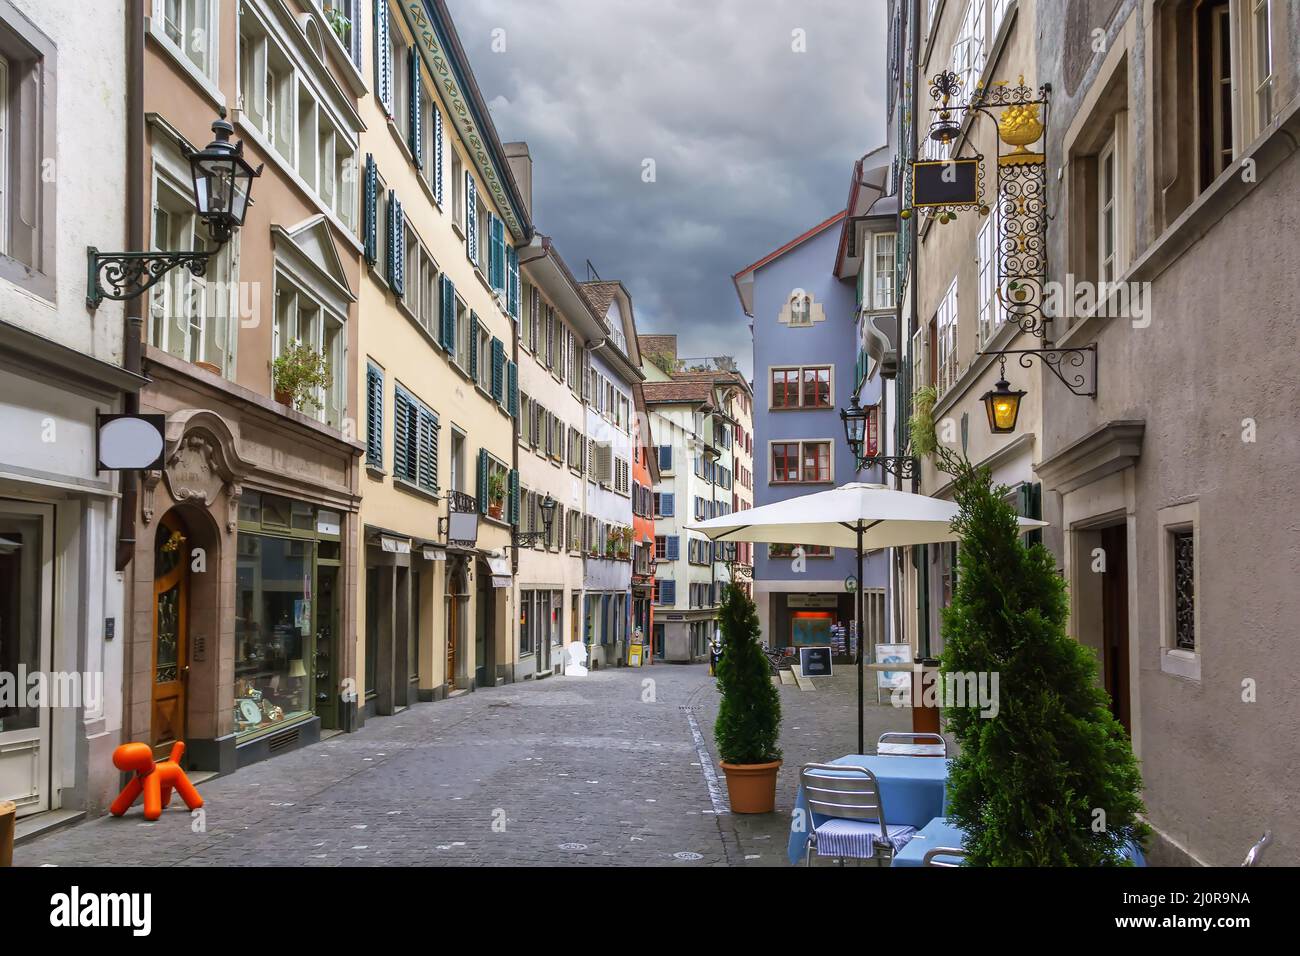 Street in Zurich, Switzerland Stock Photo